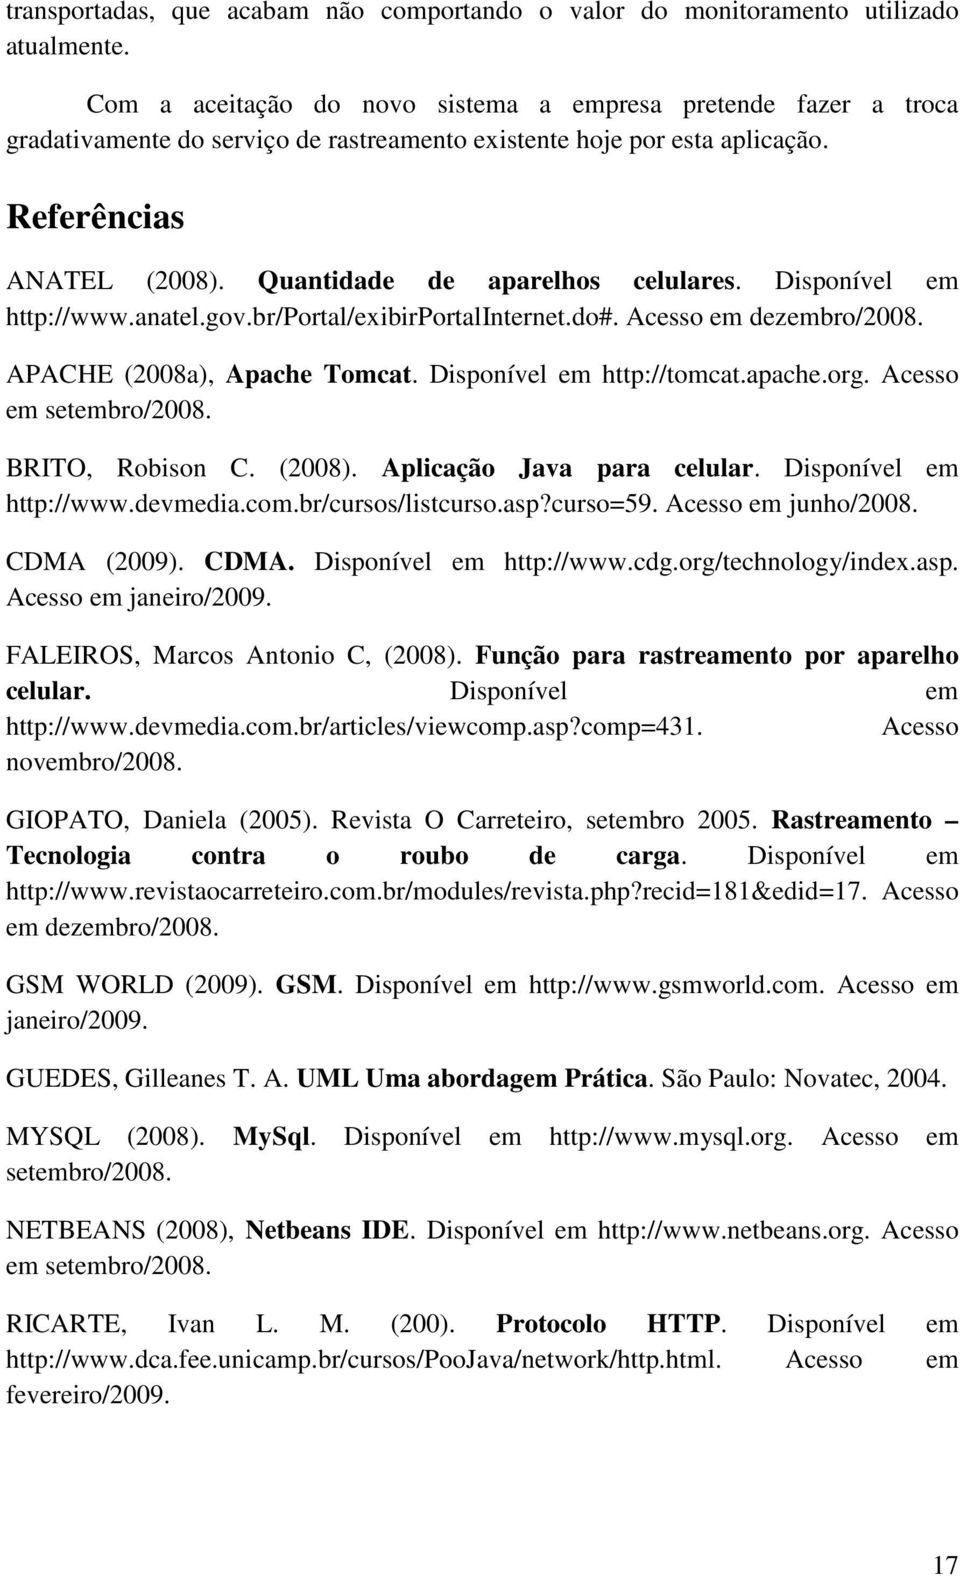 Quantidade de aparelhos celulares. Disponível em http://www.anatel.gov.br/portal/exibirportalinternet.do#. Acesso em dezembro/2008. APACHE (2008a), Apache Tomcat. Disponível em http://tomcat.apache.